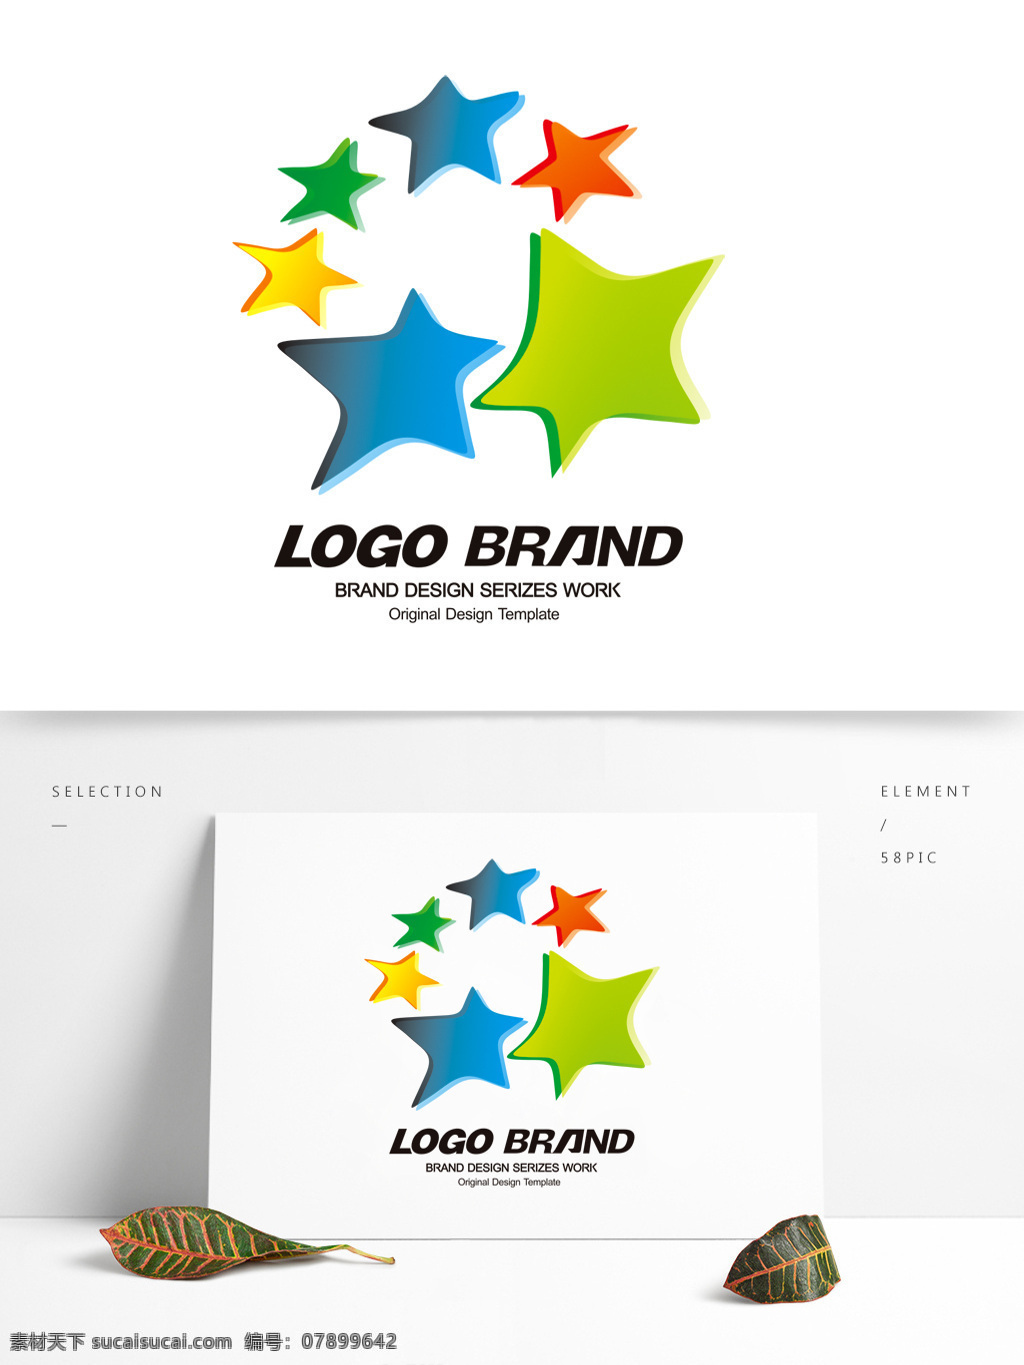 矢量 创意 黄 蓝绿 星光 logo 公司 标志设计 a 字母 星星标志设计 标志 五星 星形 公司标志设计 企业 会徽标志设计 企业标志设计